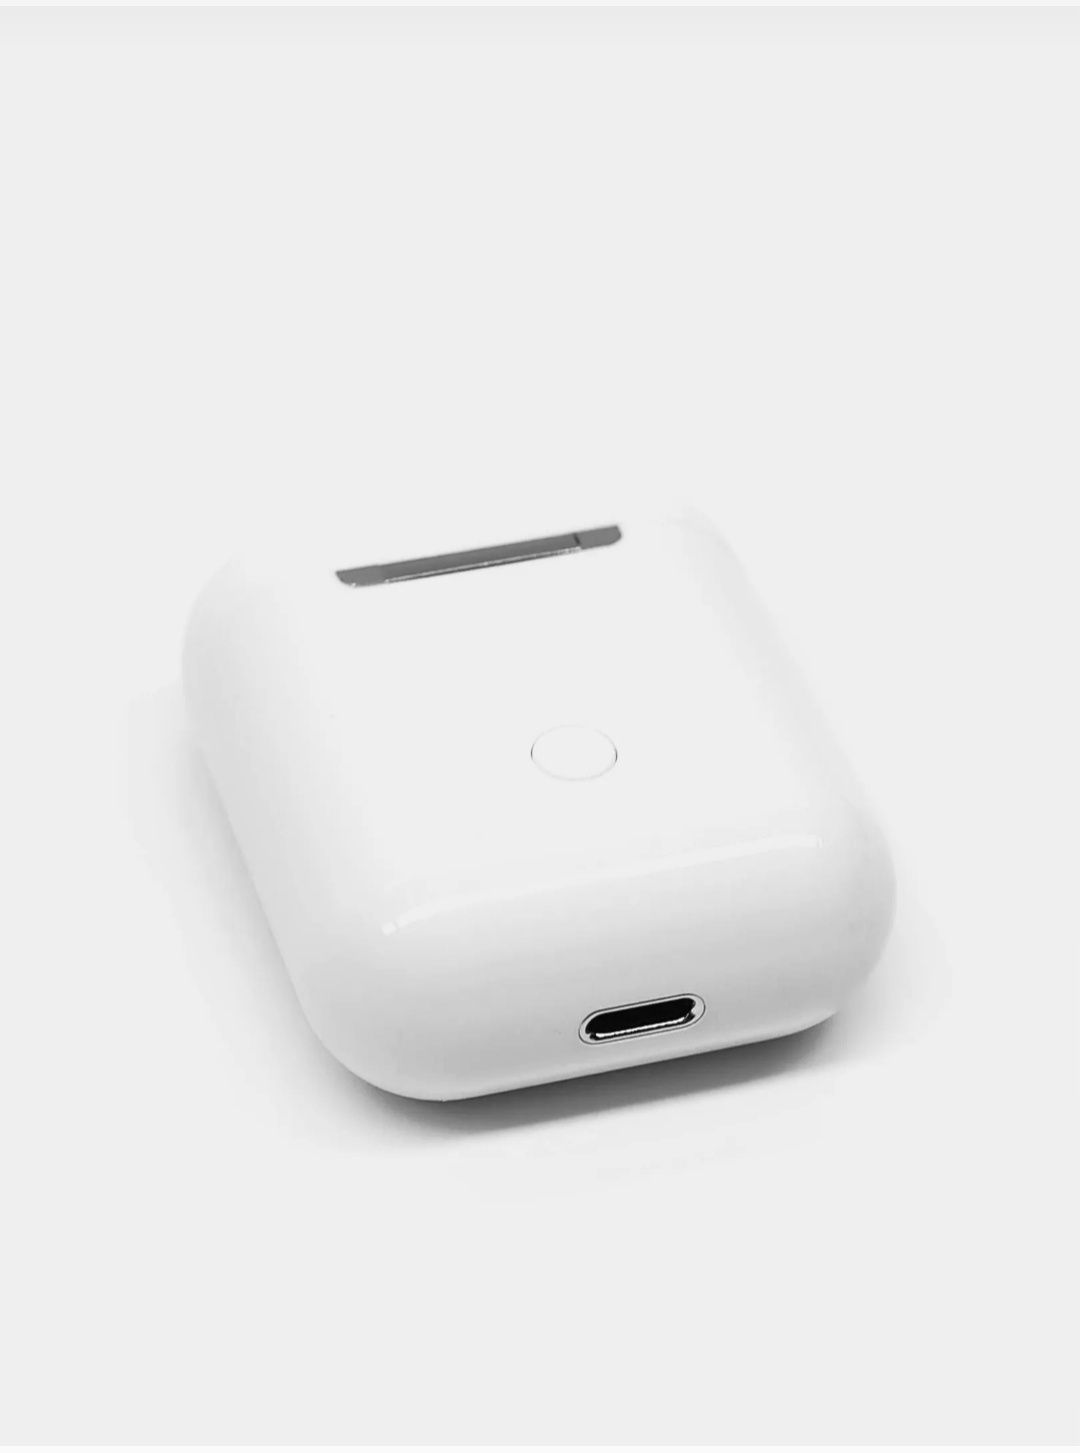 TWS i9S simsiz minigarnituralari. Bluetooth 5.0